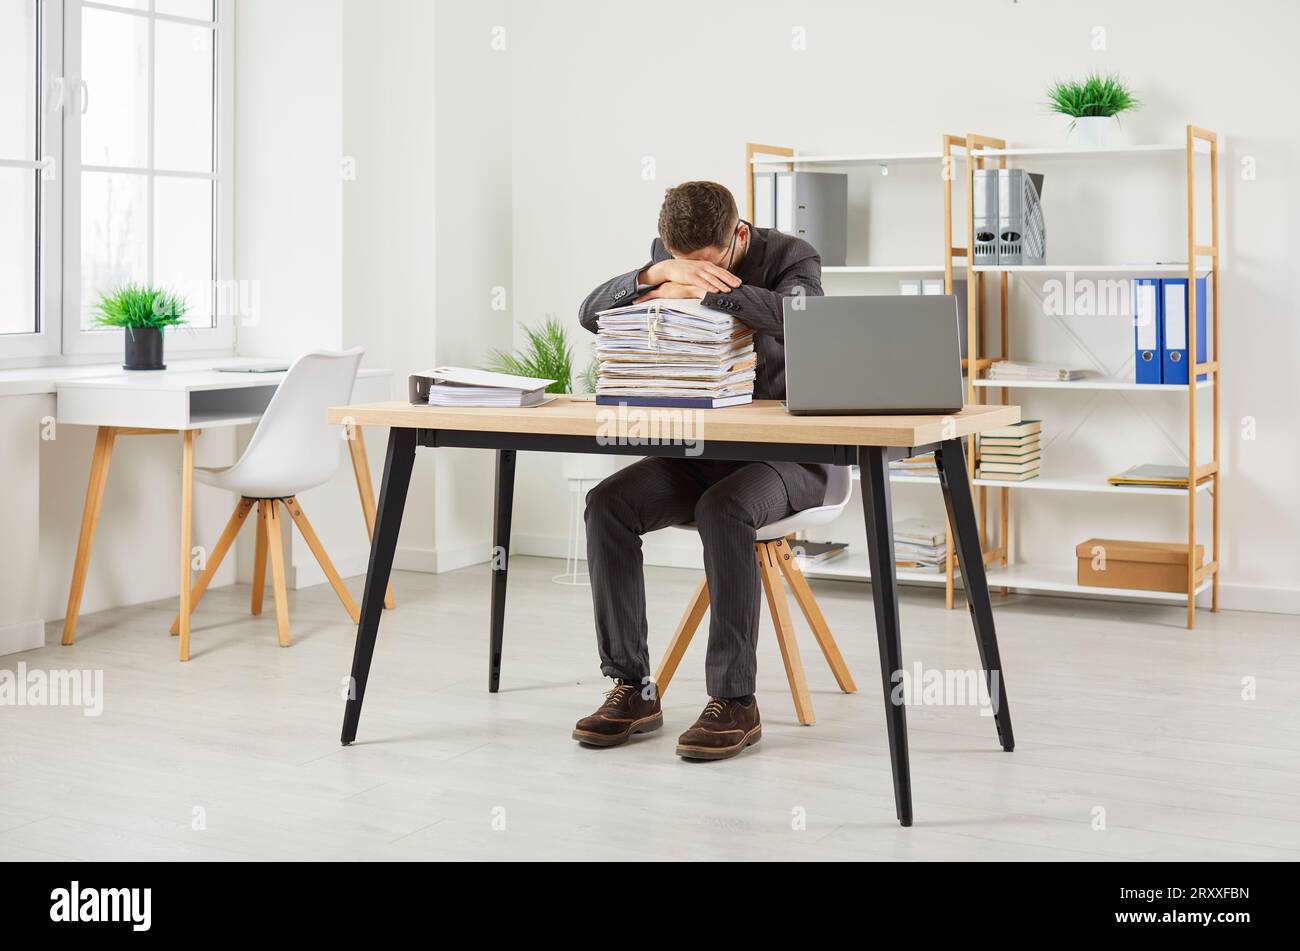 Erschöpfter Mitarbeiter, der es satt hat, zu viel zu arbeiten, schläft auf Stapeln von Ordnern mit Dokumenten im Büro. Stockfoto